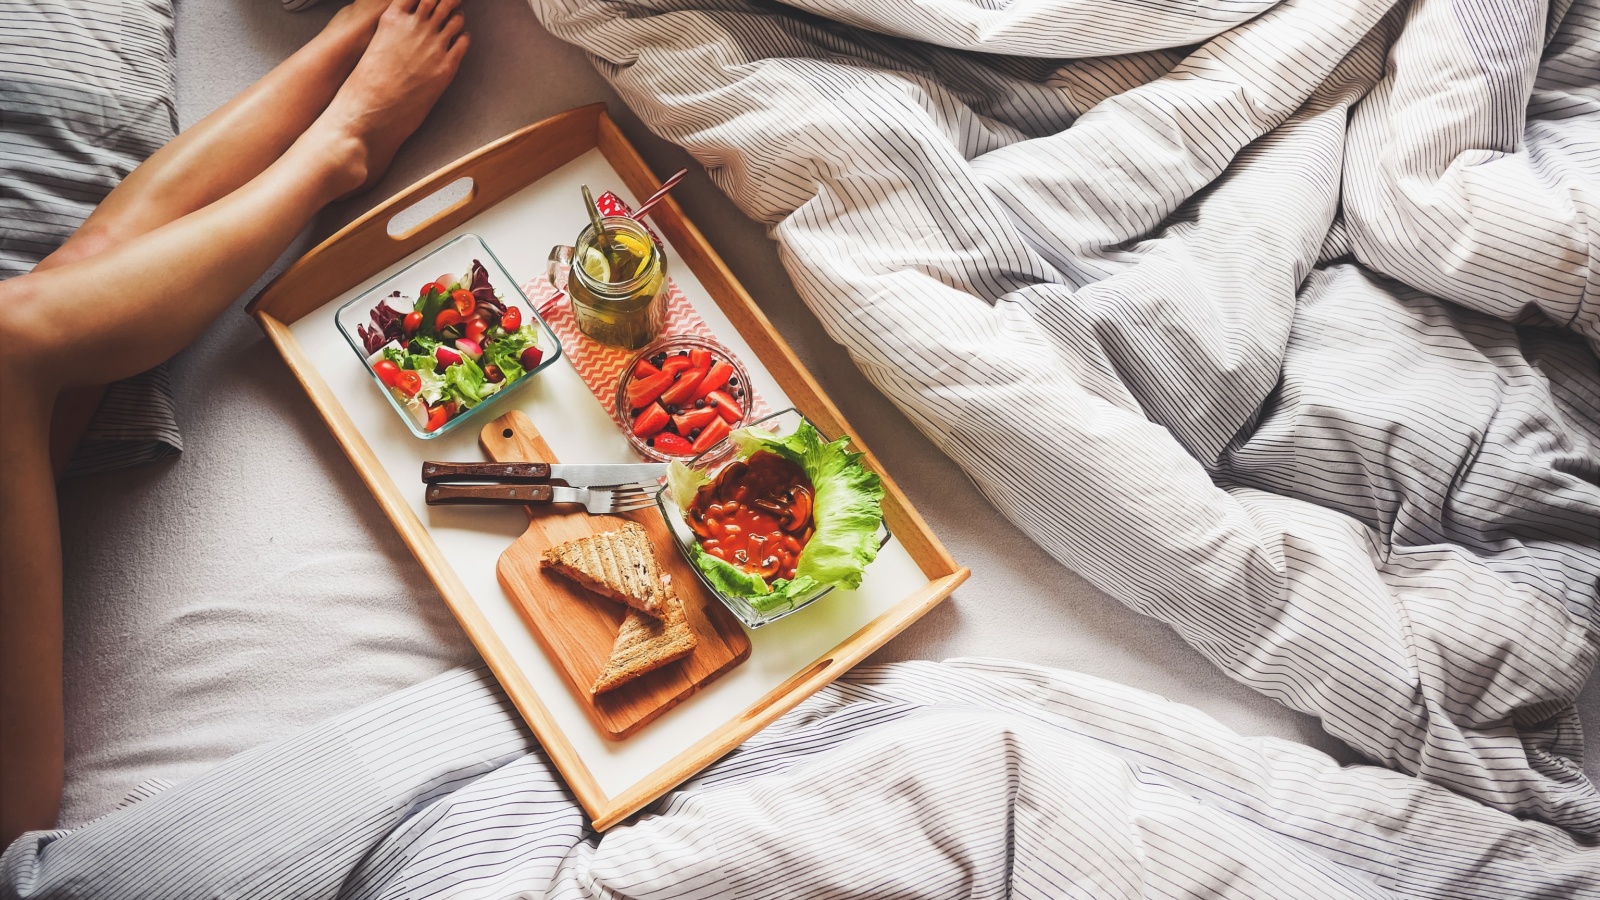 Breakfast in Bed wallpaper 1600x900